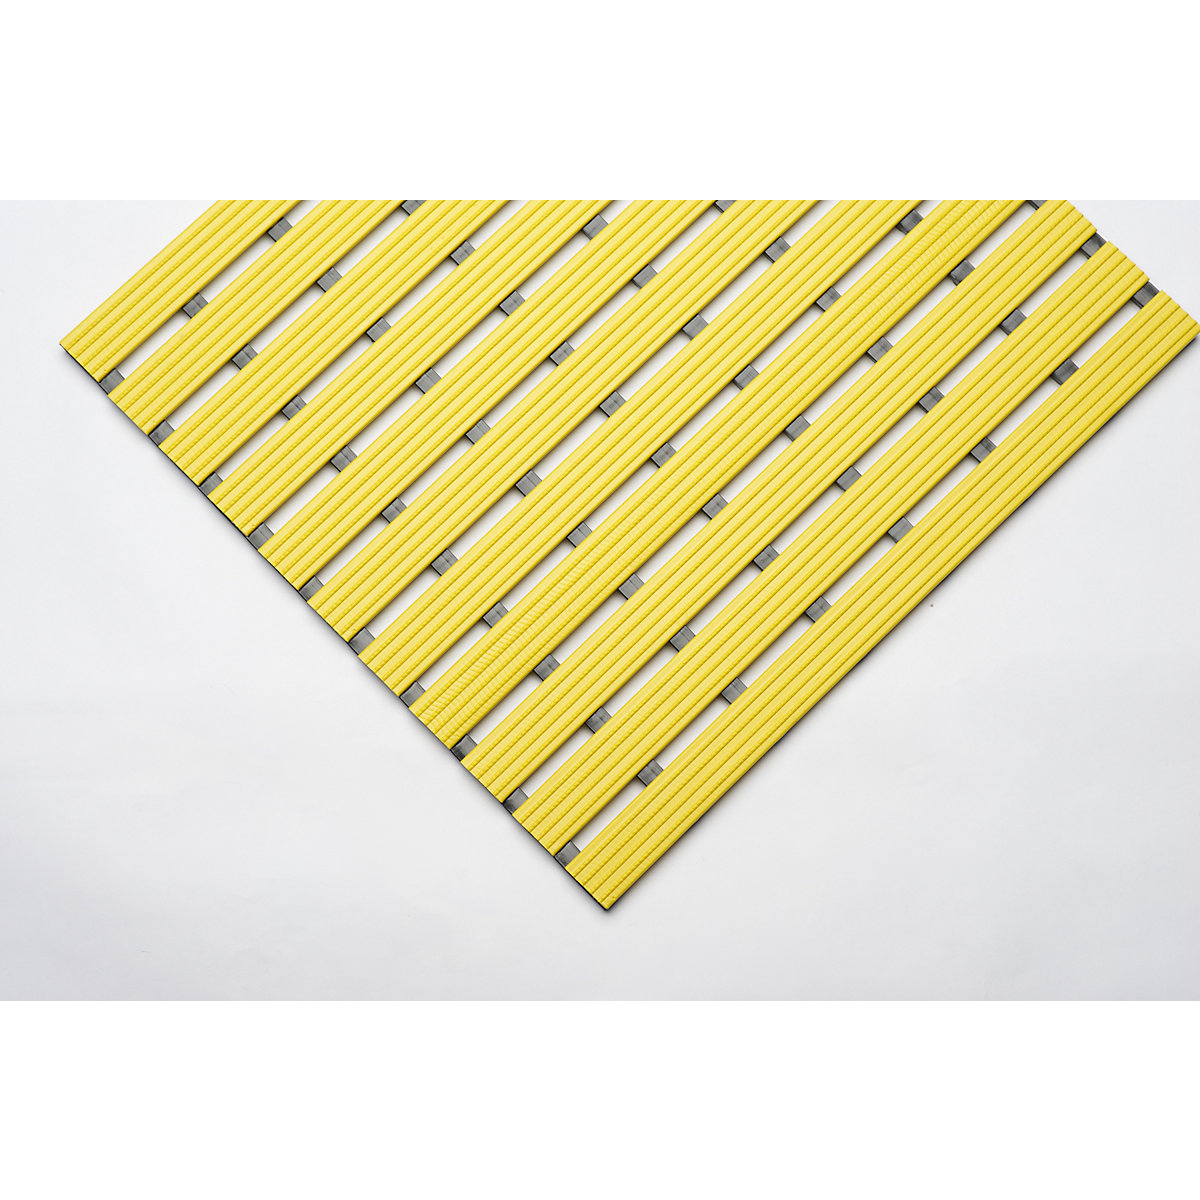 PVC-profilú szőnyeg, folyóméterenként, csúszásmentes futófelület kemény PVC-ből, szélesség 600 mm, sárga-8